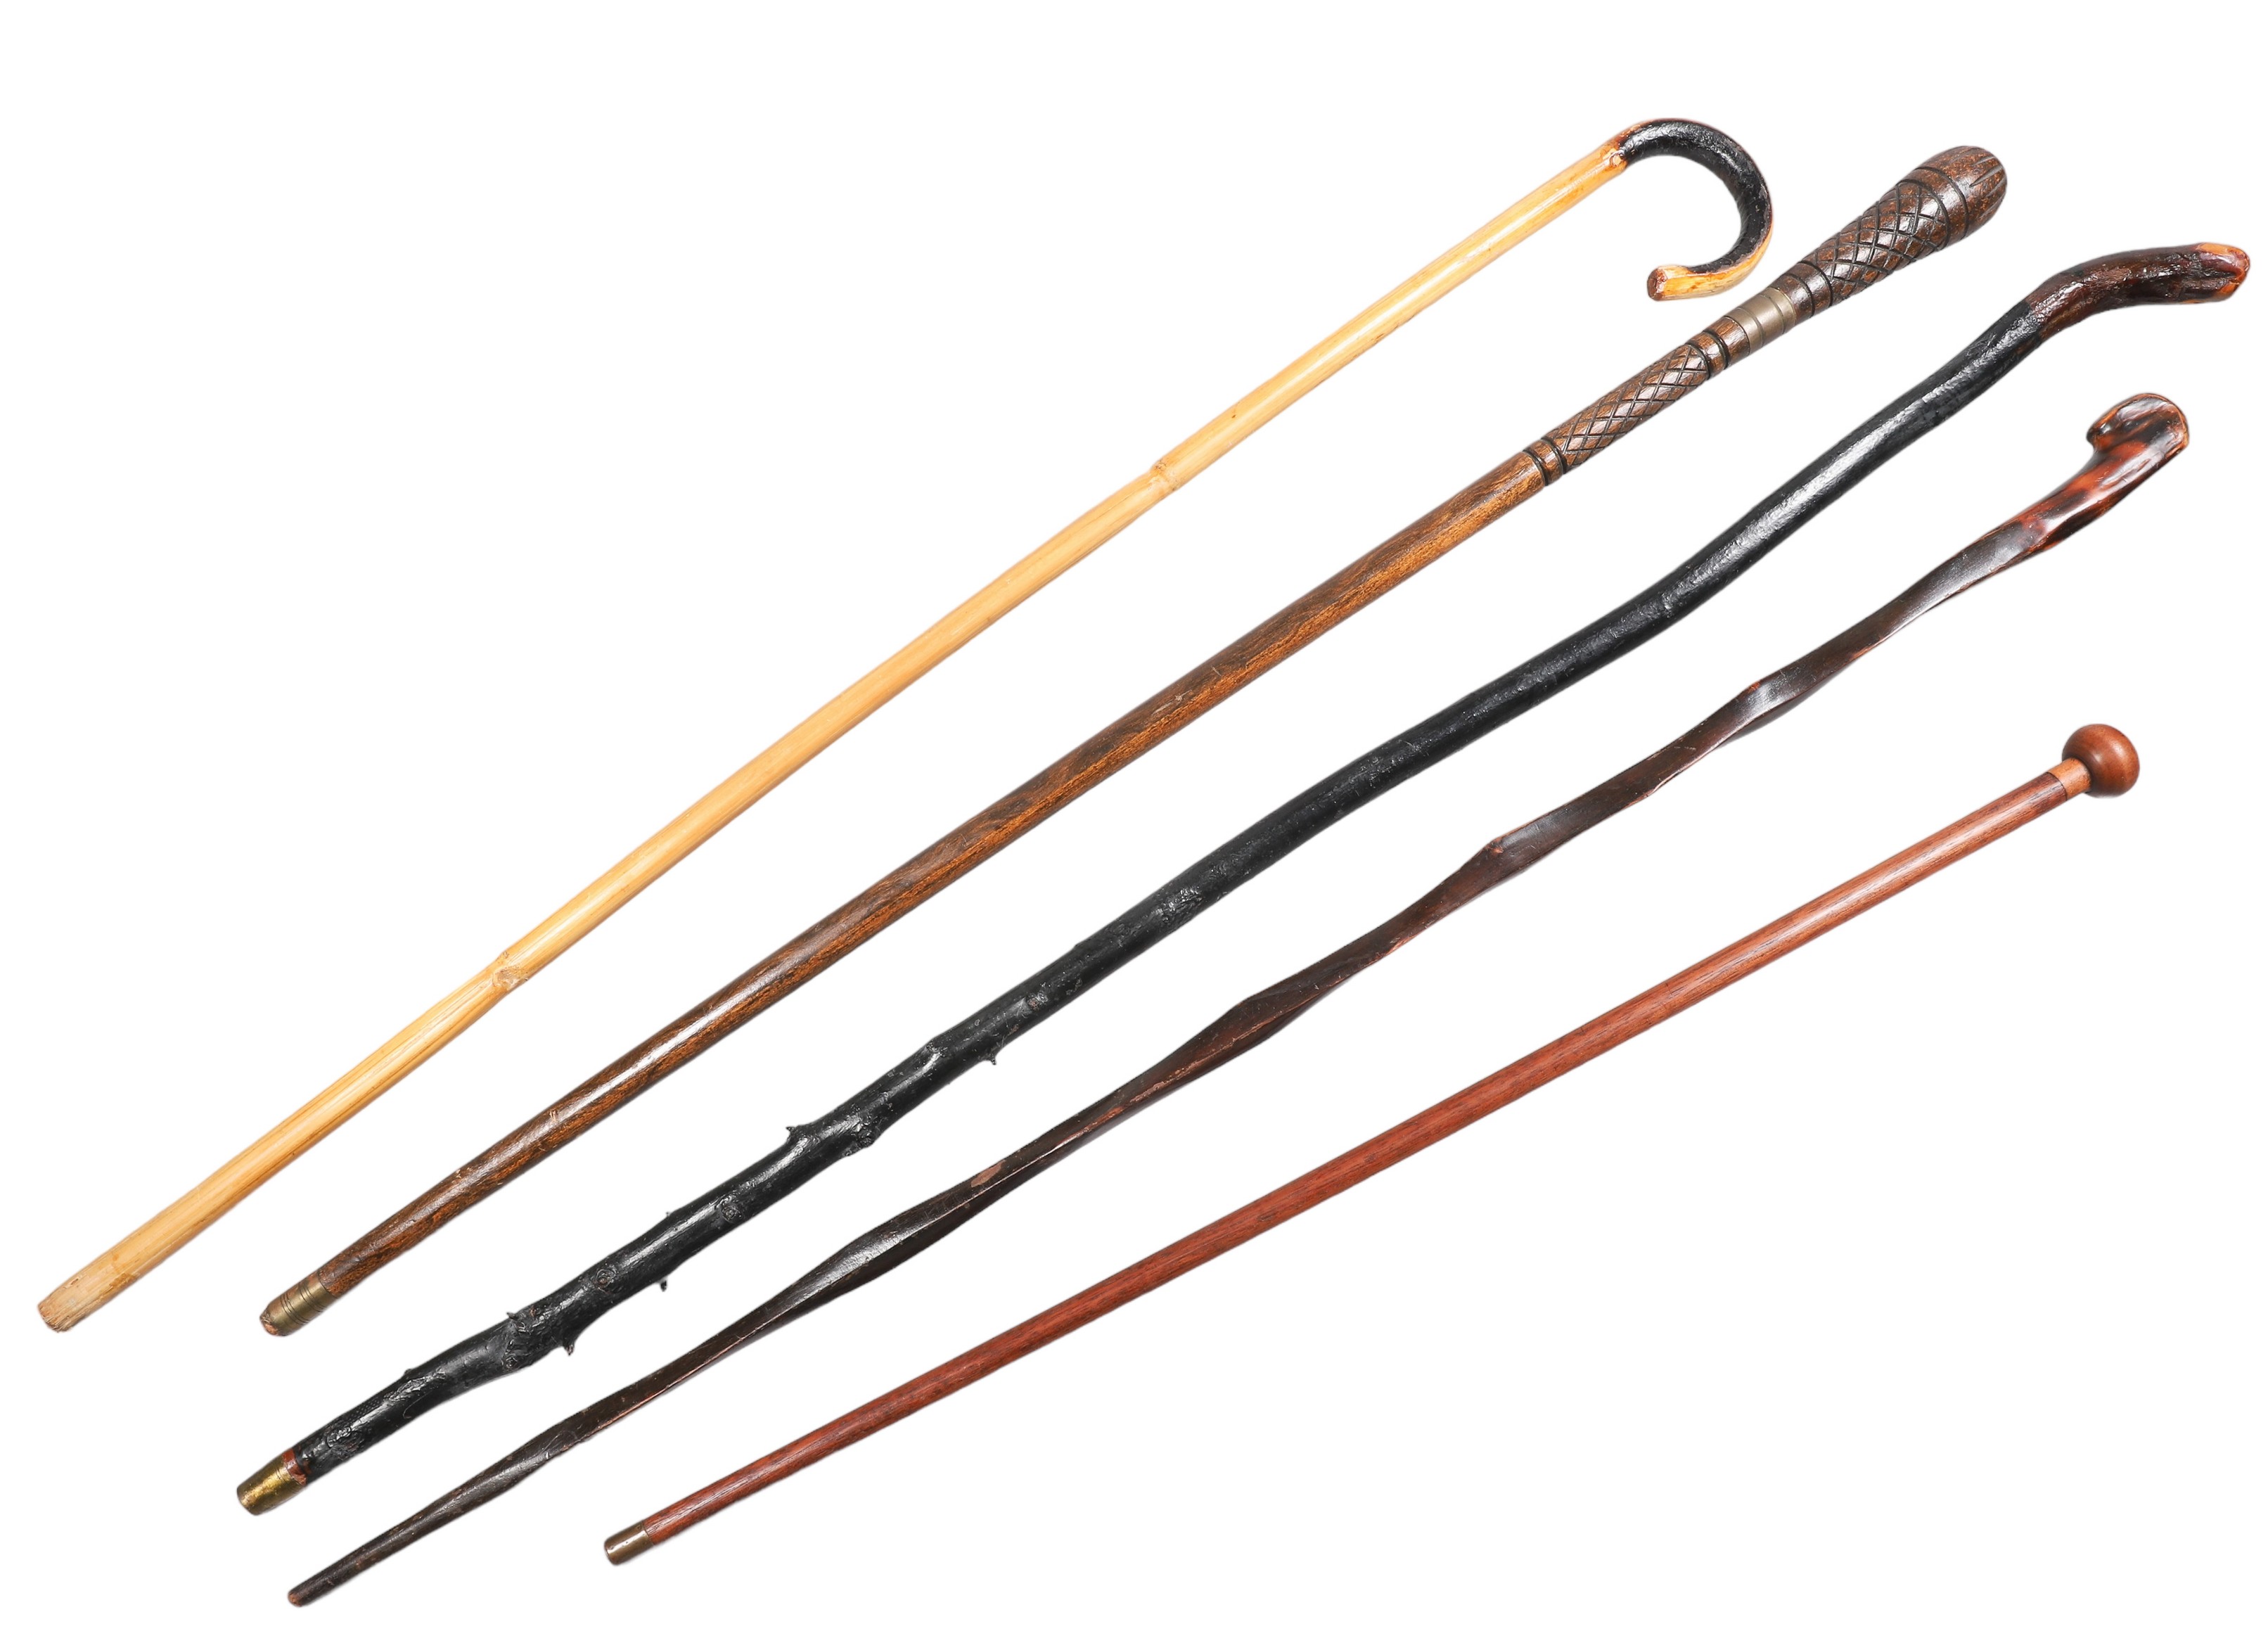  5 Walking stick canes including 2e13f9